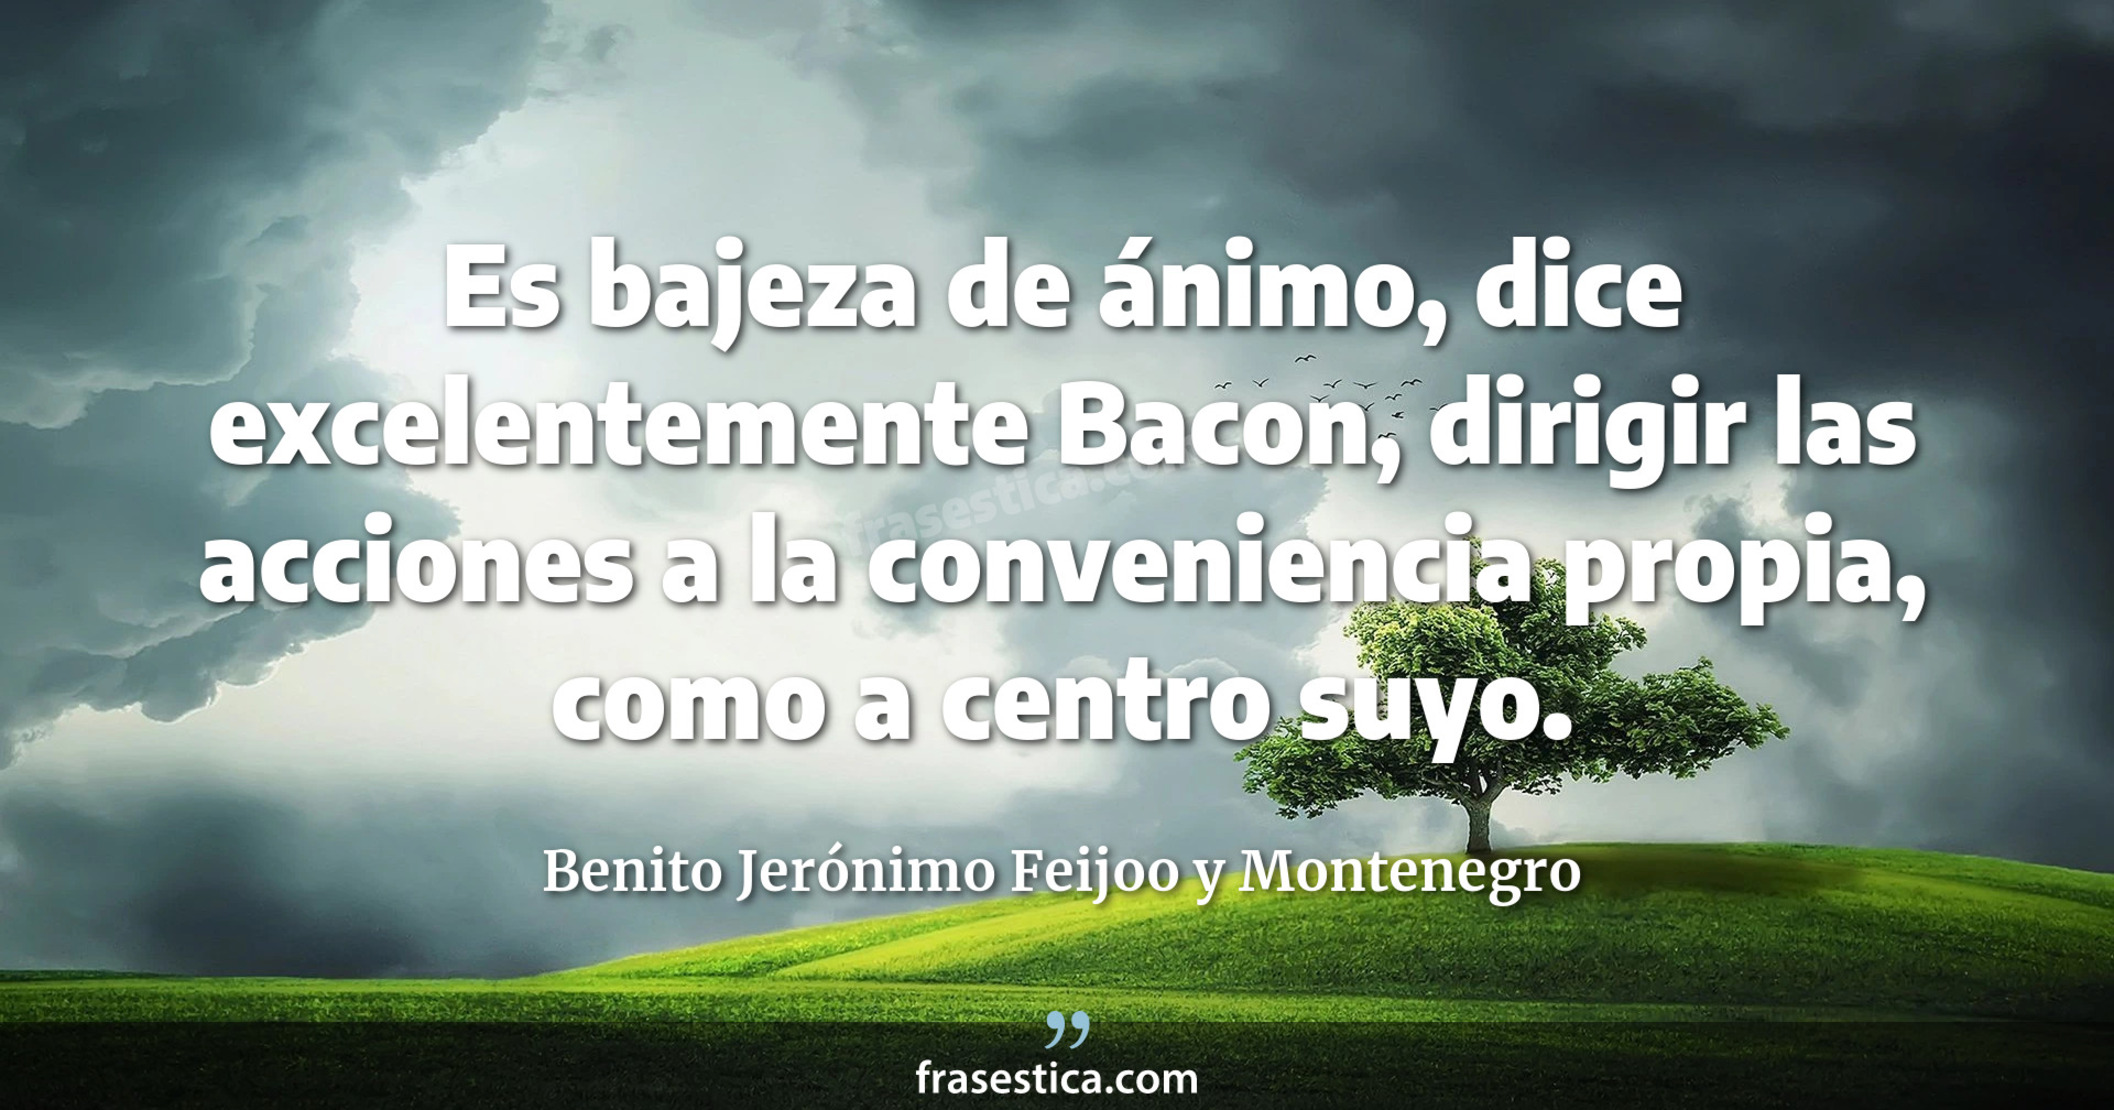 Es bajeza de ánimo, dice excelentemente Bacon, dirigir las acciones a la conveniencia propia, como a centro suyo. - Benito Jerónimo Feijoo y Montenegro